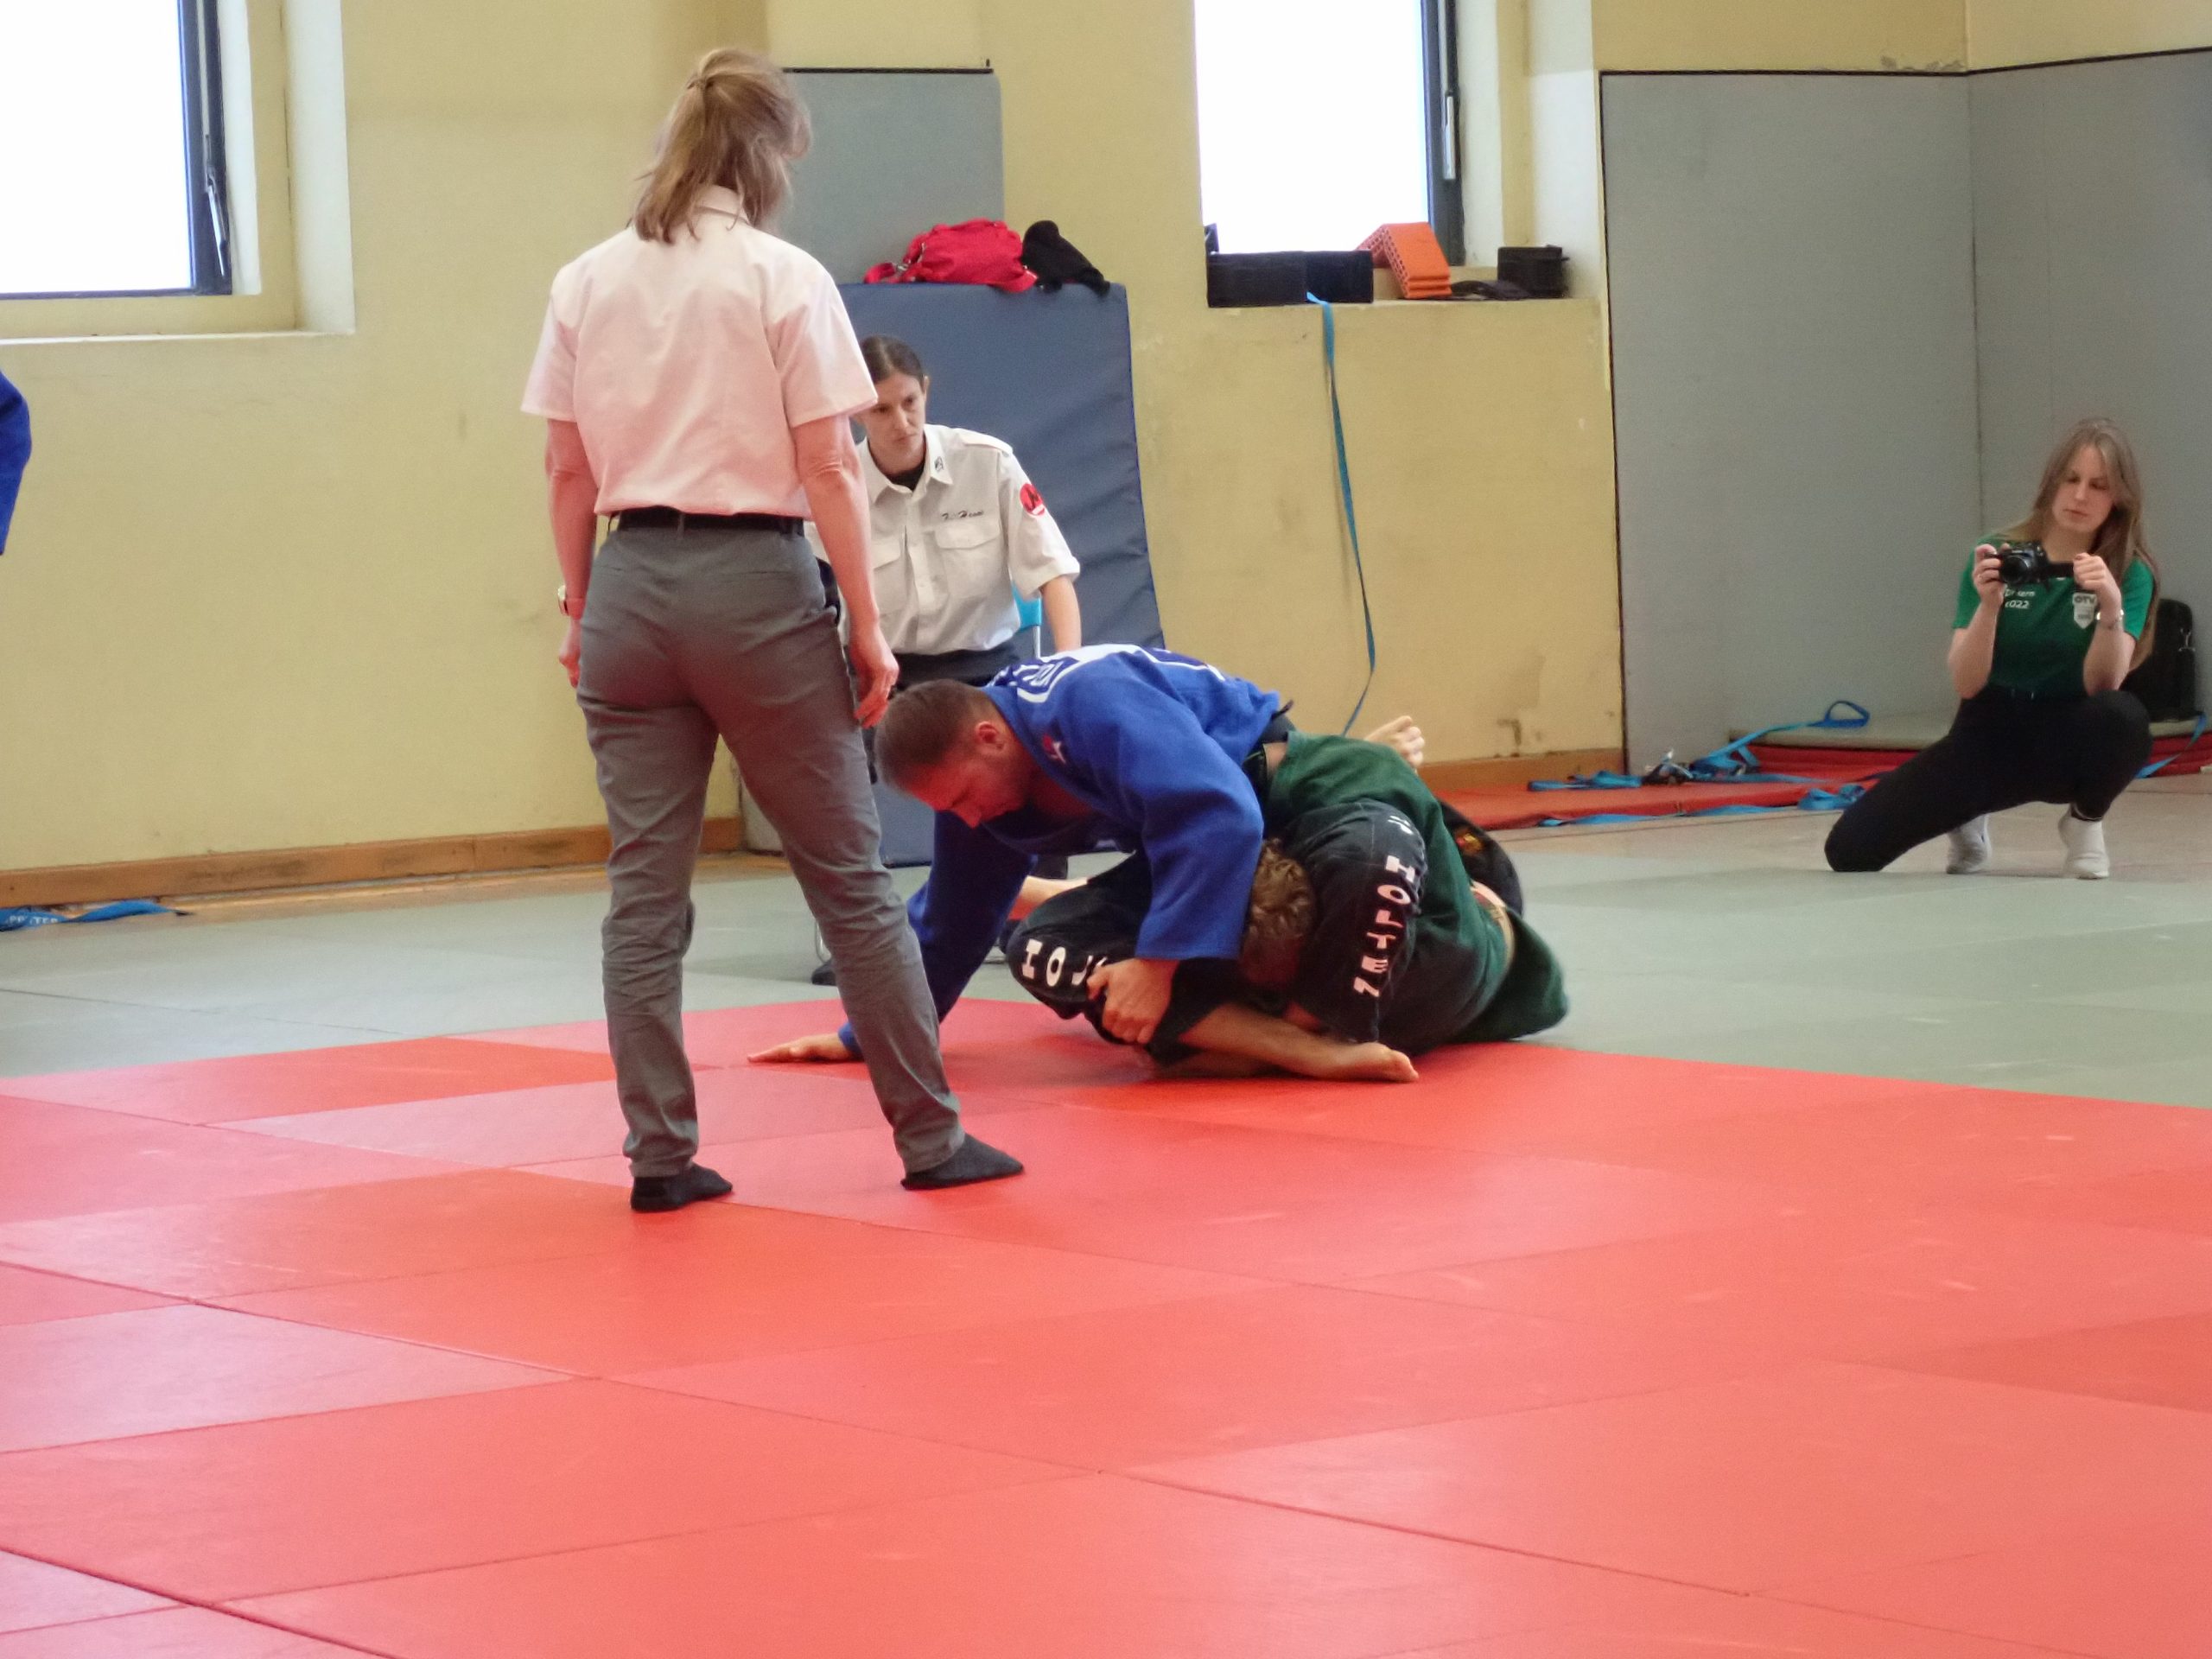 Judo-Team Holten